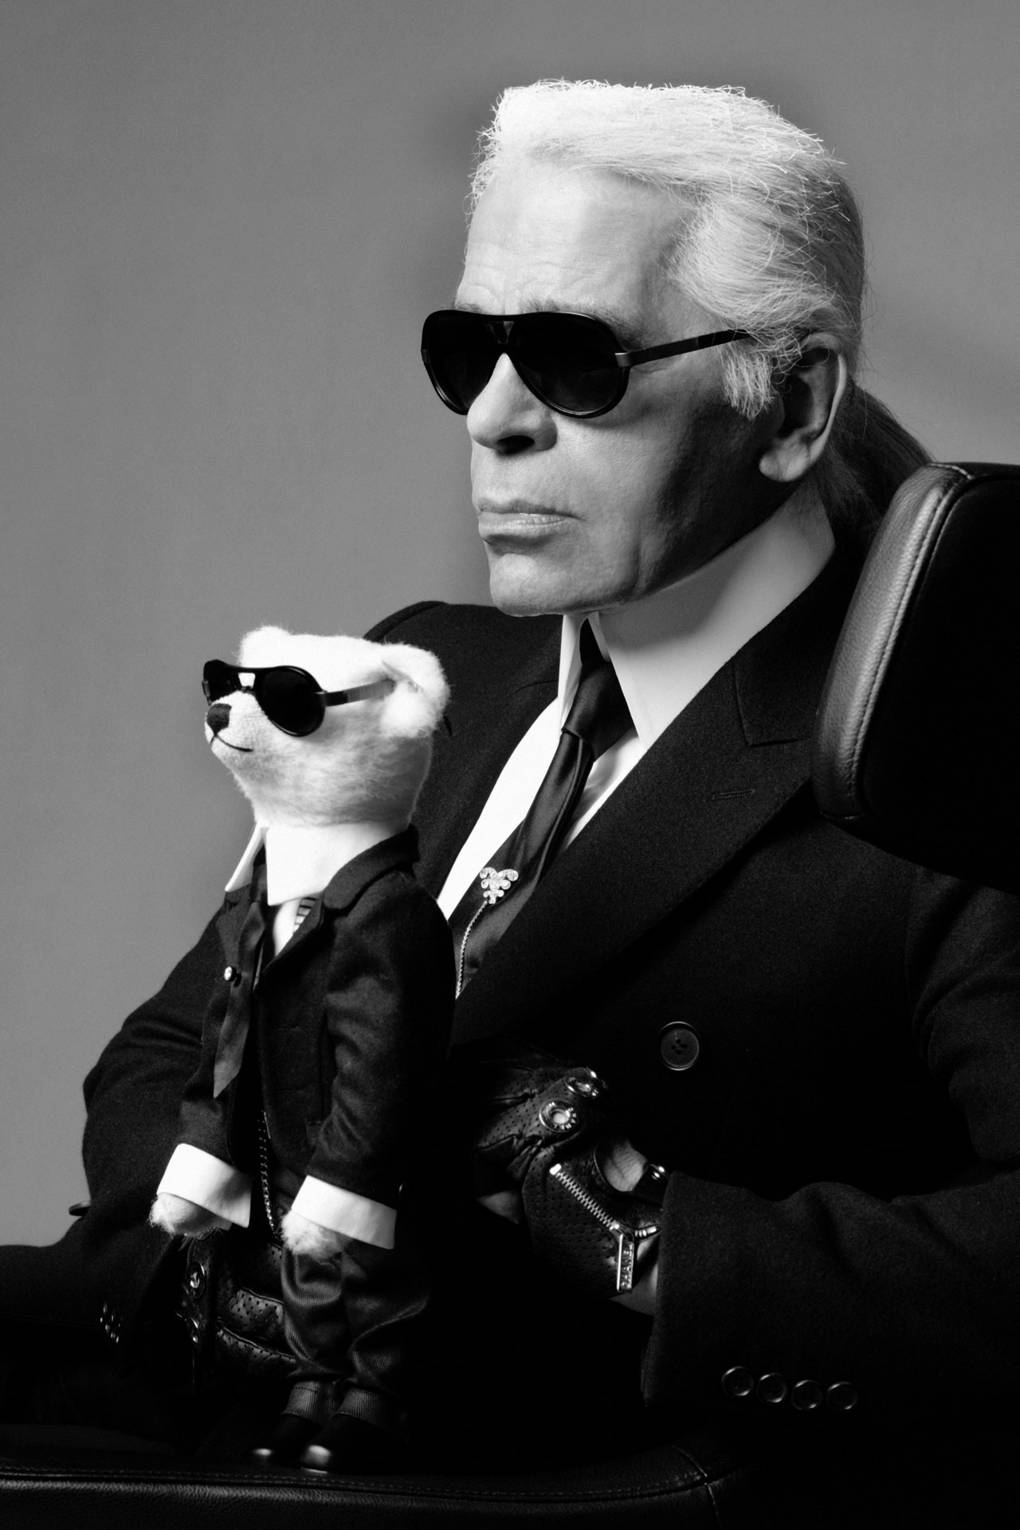 Karl Lagerfeld dies at 85